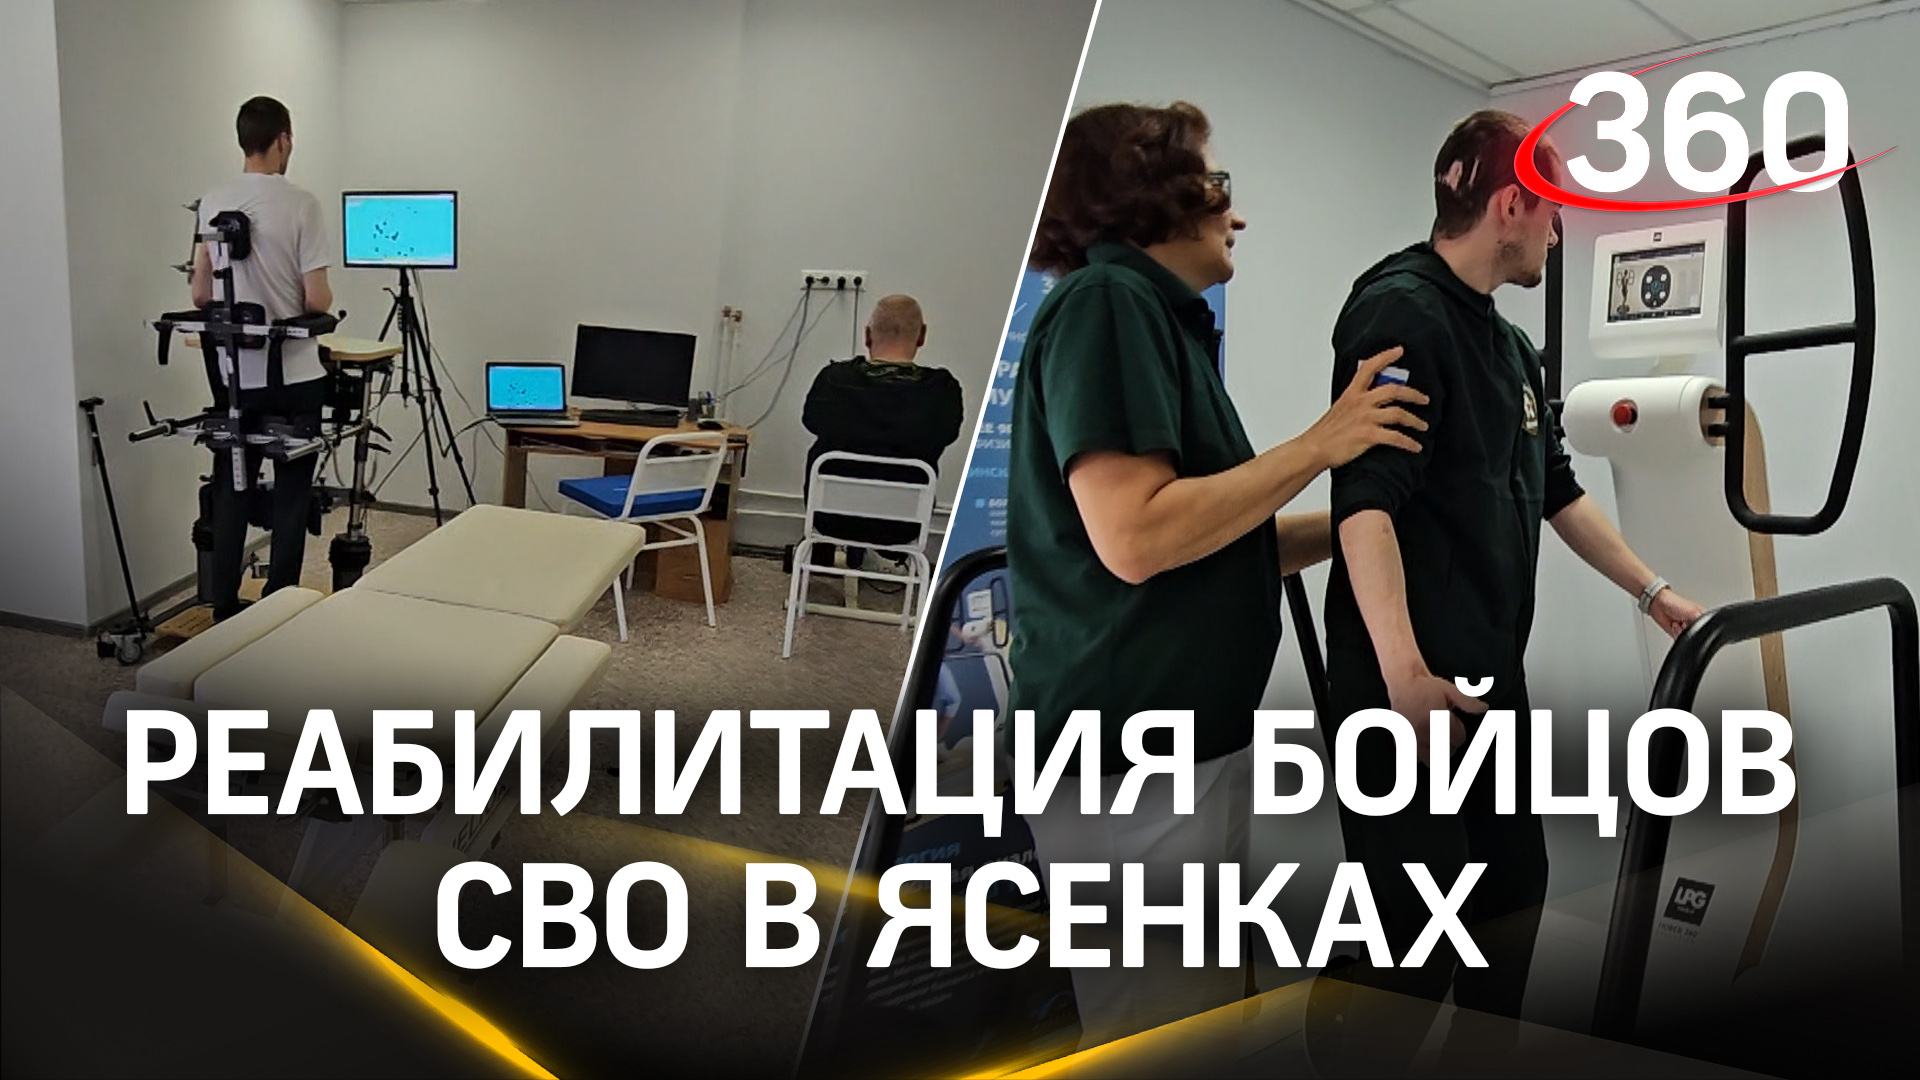 В подмосковном центре “Ясенки” прошли реабилитацию 176 участников СВО